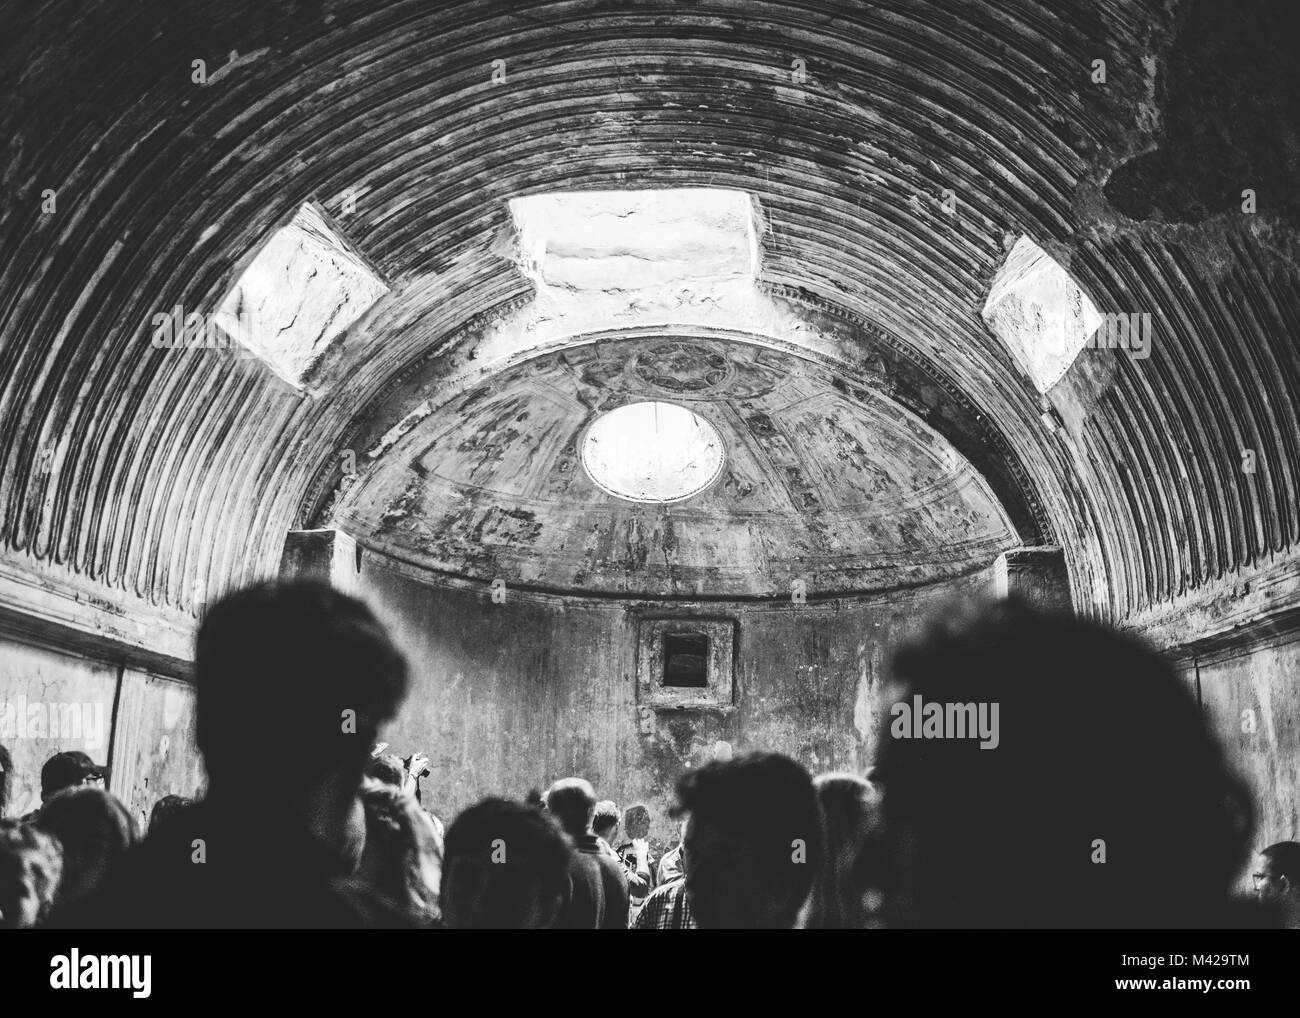 Immagine in bianco e nero di una cupola romana in Pompeï Italia Foto Stock